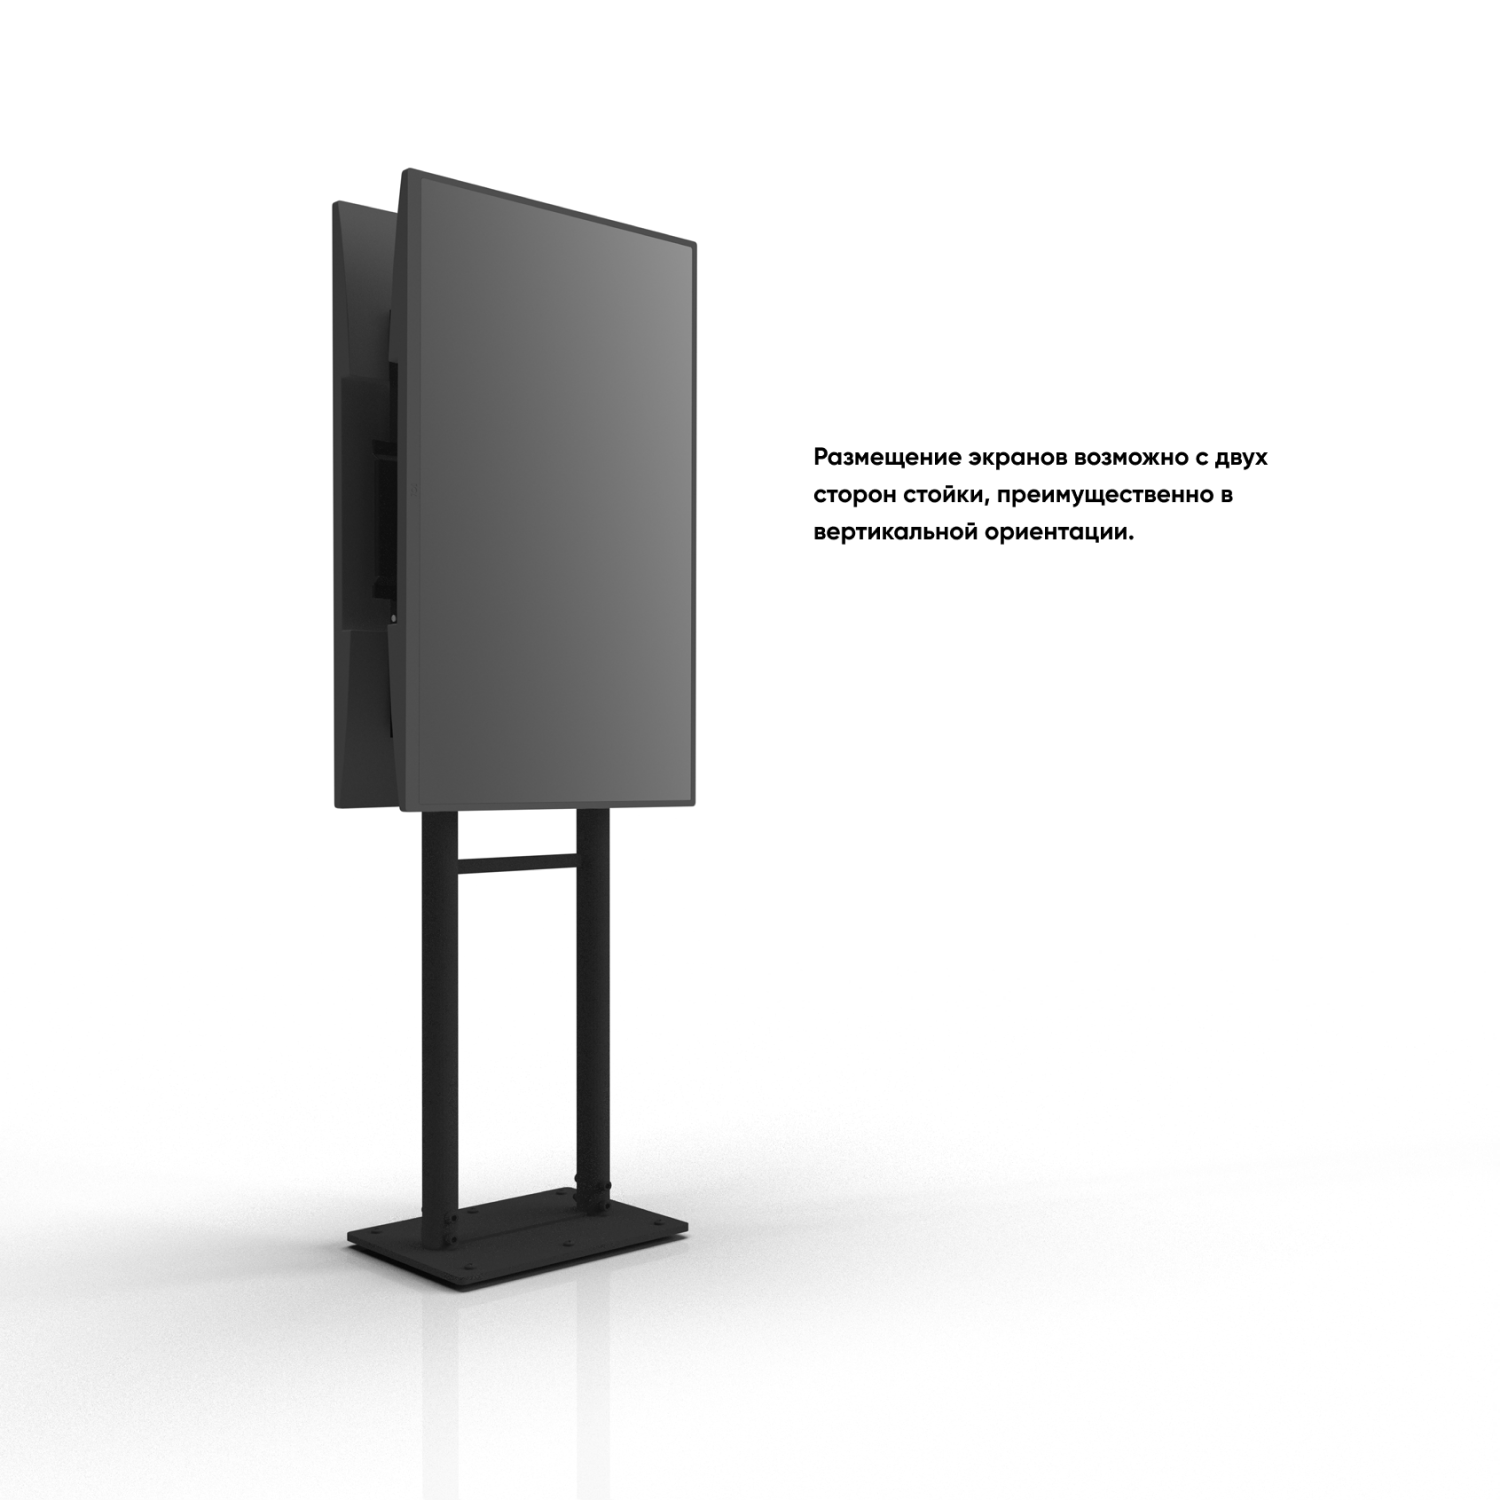 ONKRON FPRO2L-20 стационарная стойка для двух экранов 40'-70', черный